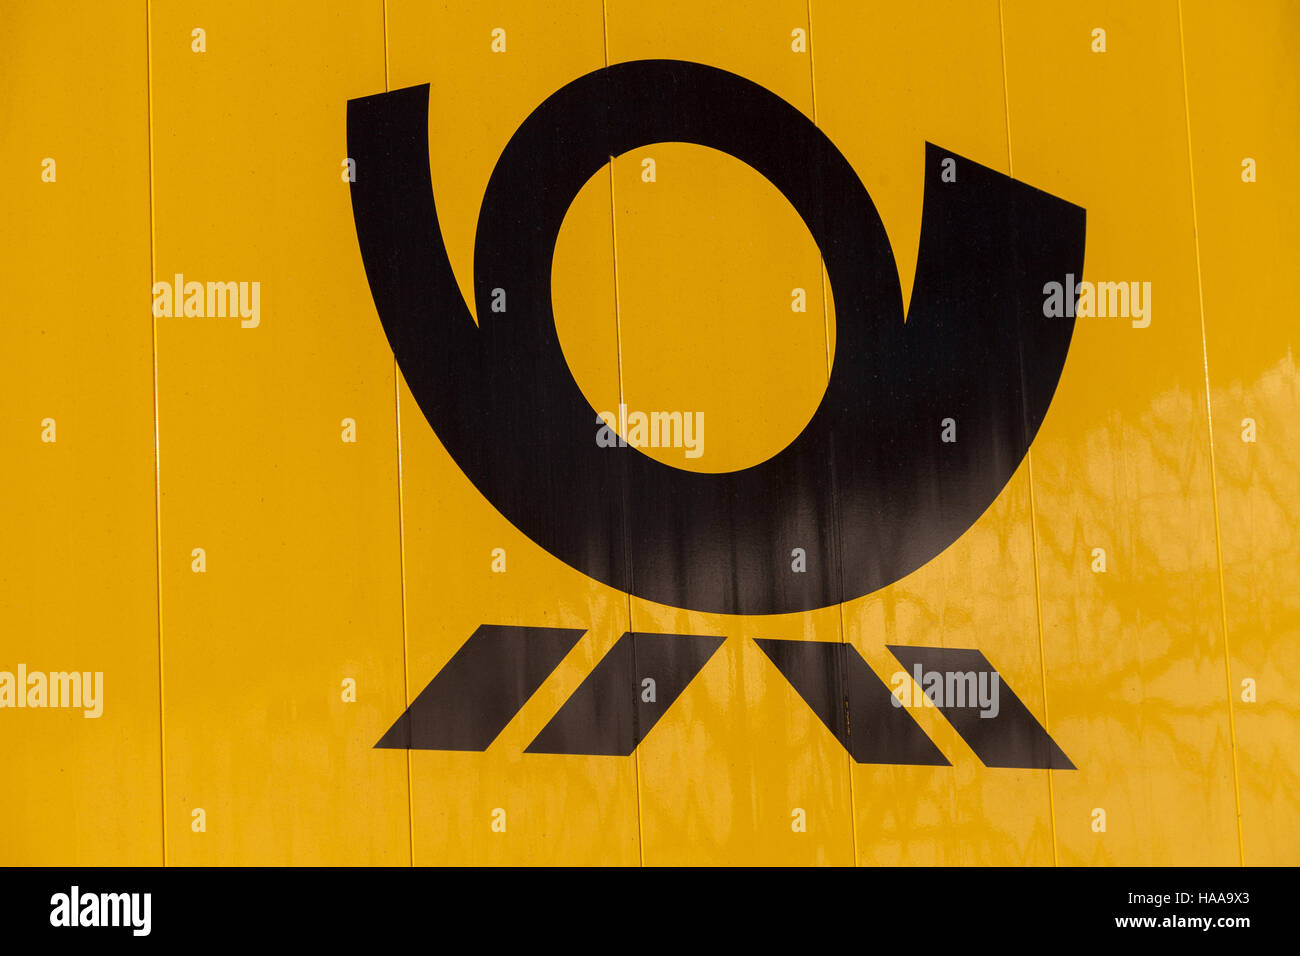 HANNOVER / Deutschland - 27. November 2016: Deutsche Post Service (Deutsche Post) Logo auf einem gelben Container Stockfoto